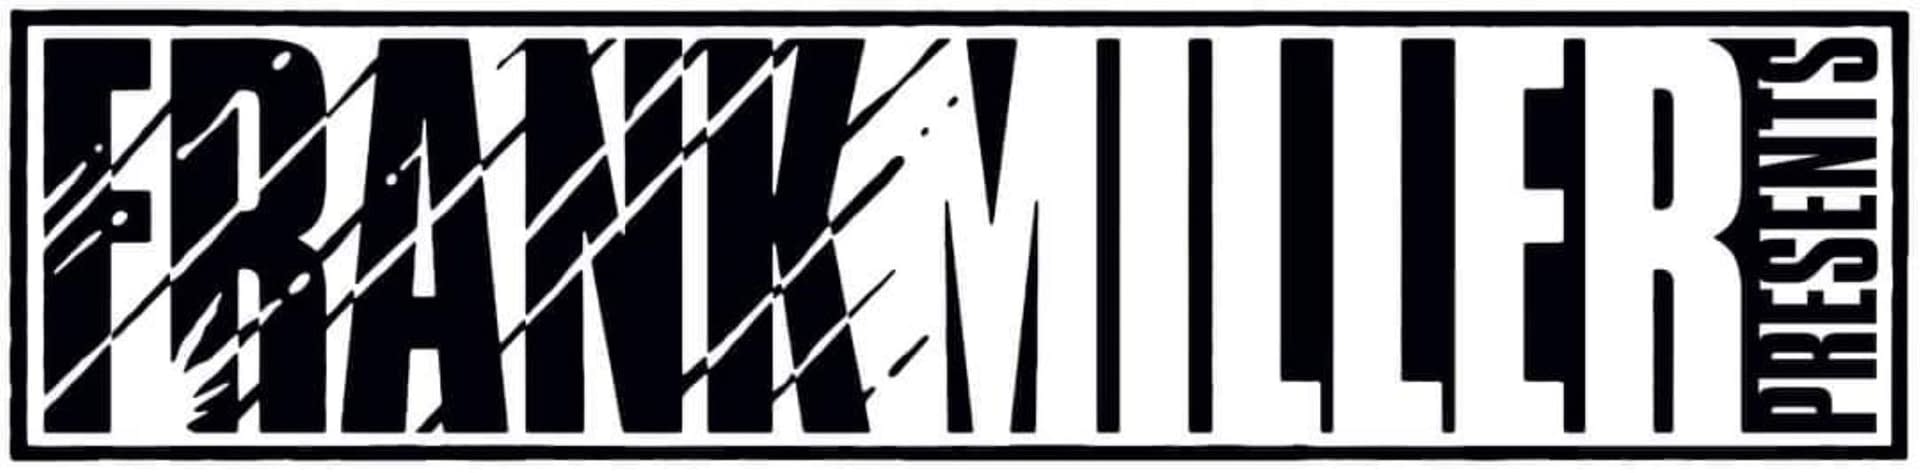 Frank Miller Presents Logo